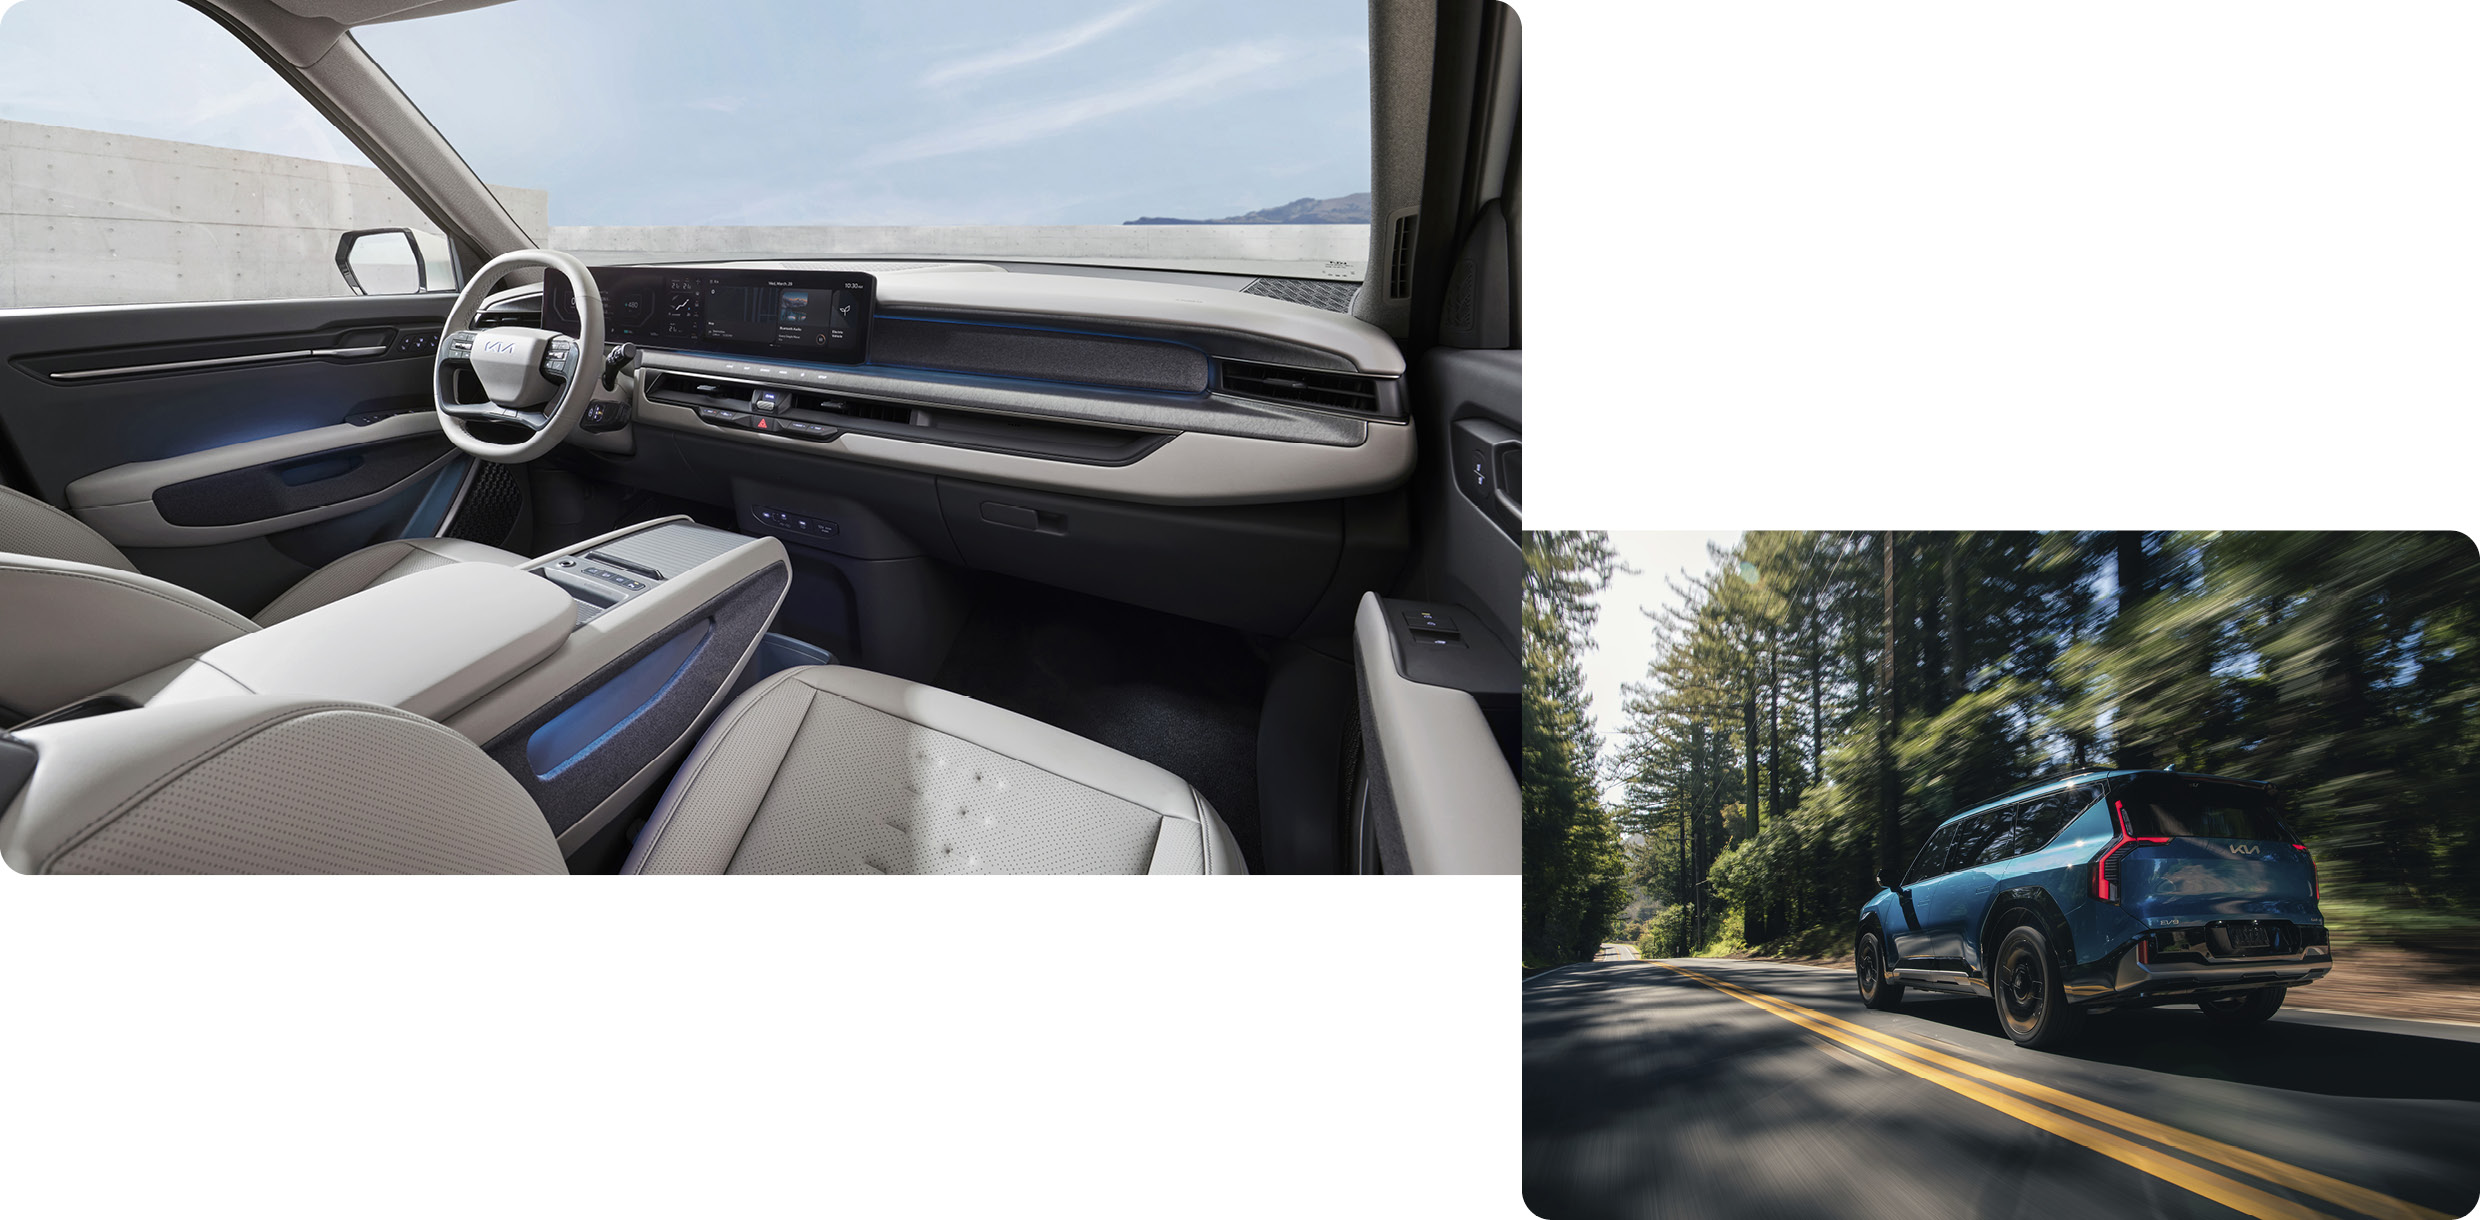 EV9 대시보드를 사선에서 비춘 모습과 미국 숲길을 주행하는 후측면 모습